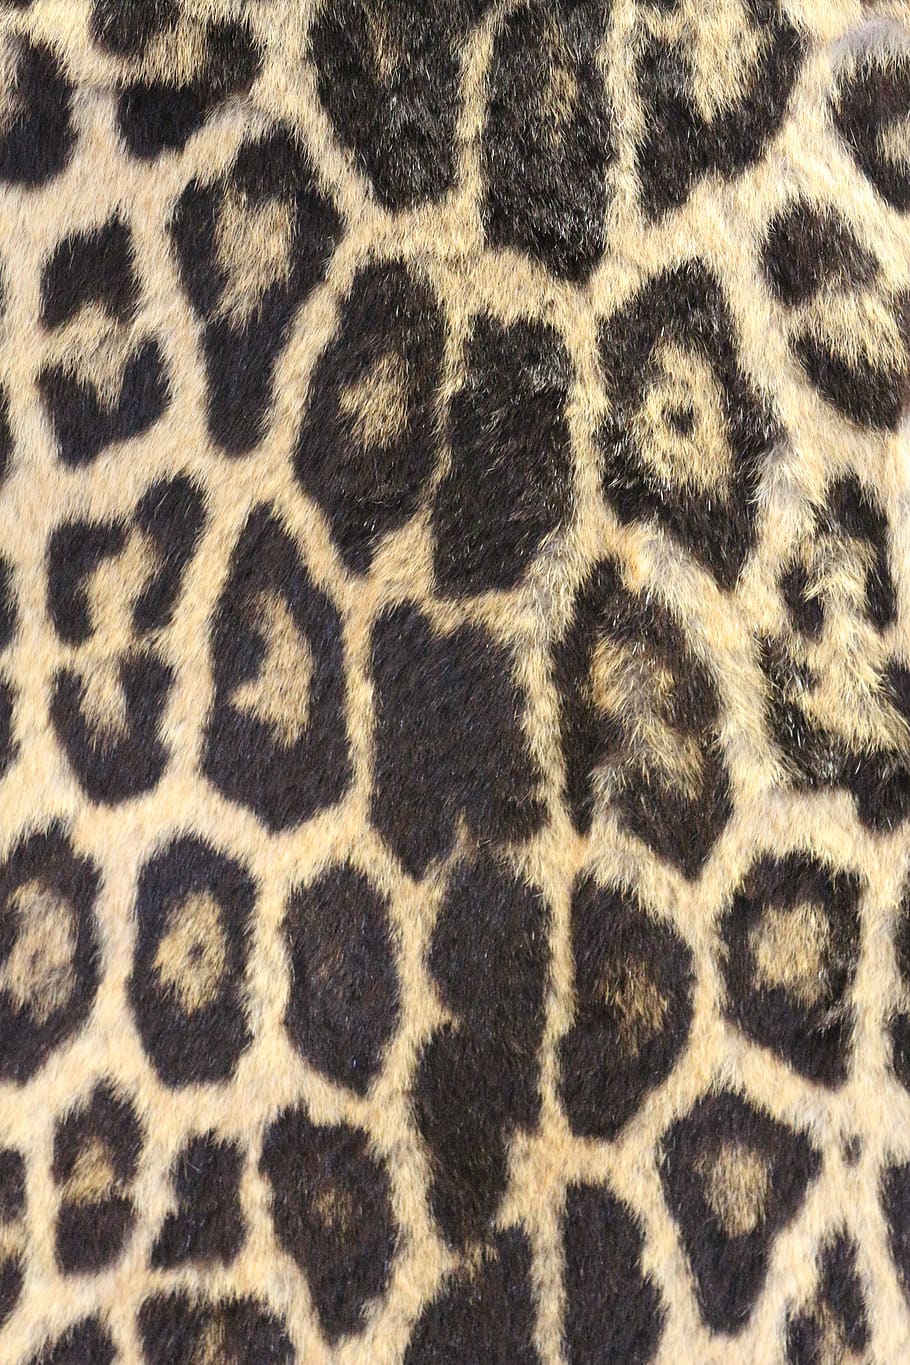 leopard print, leopard skin, bold, wildlife, zoo, safari, africa, fur, dots, brown